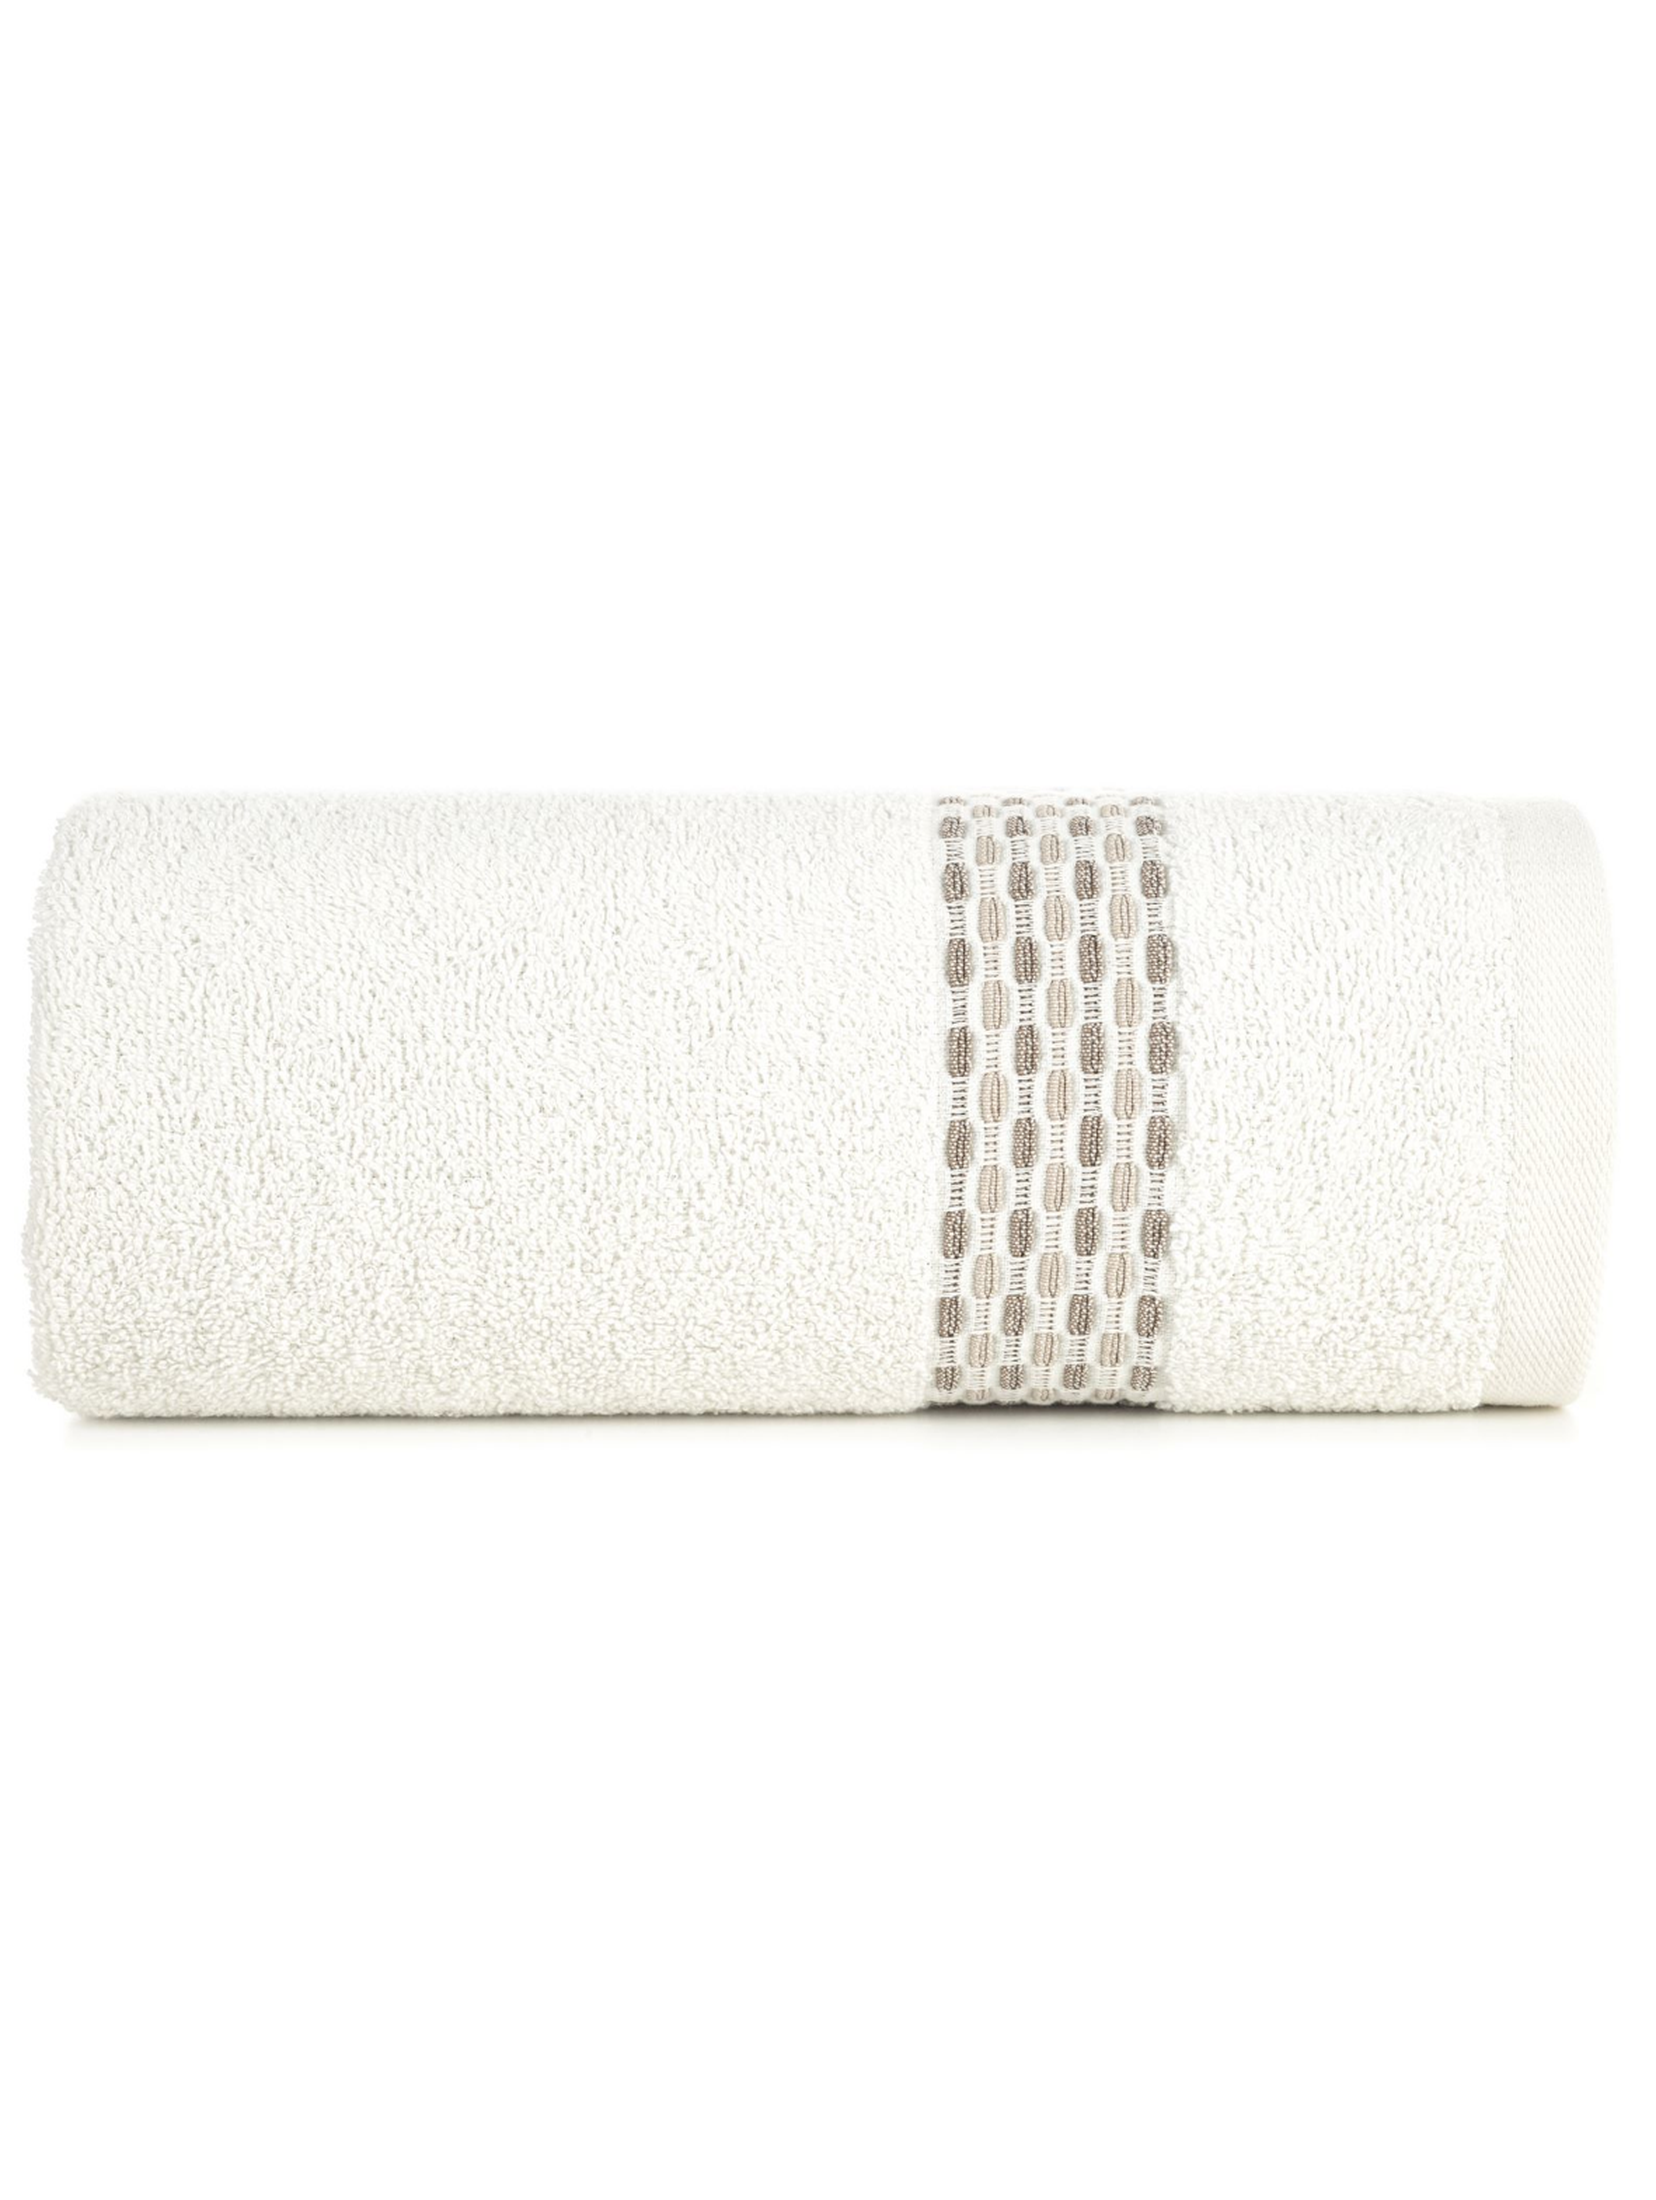 Kremowy ręcznik ze zdobieniami 50x90 cm